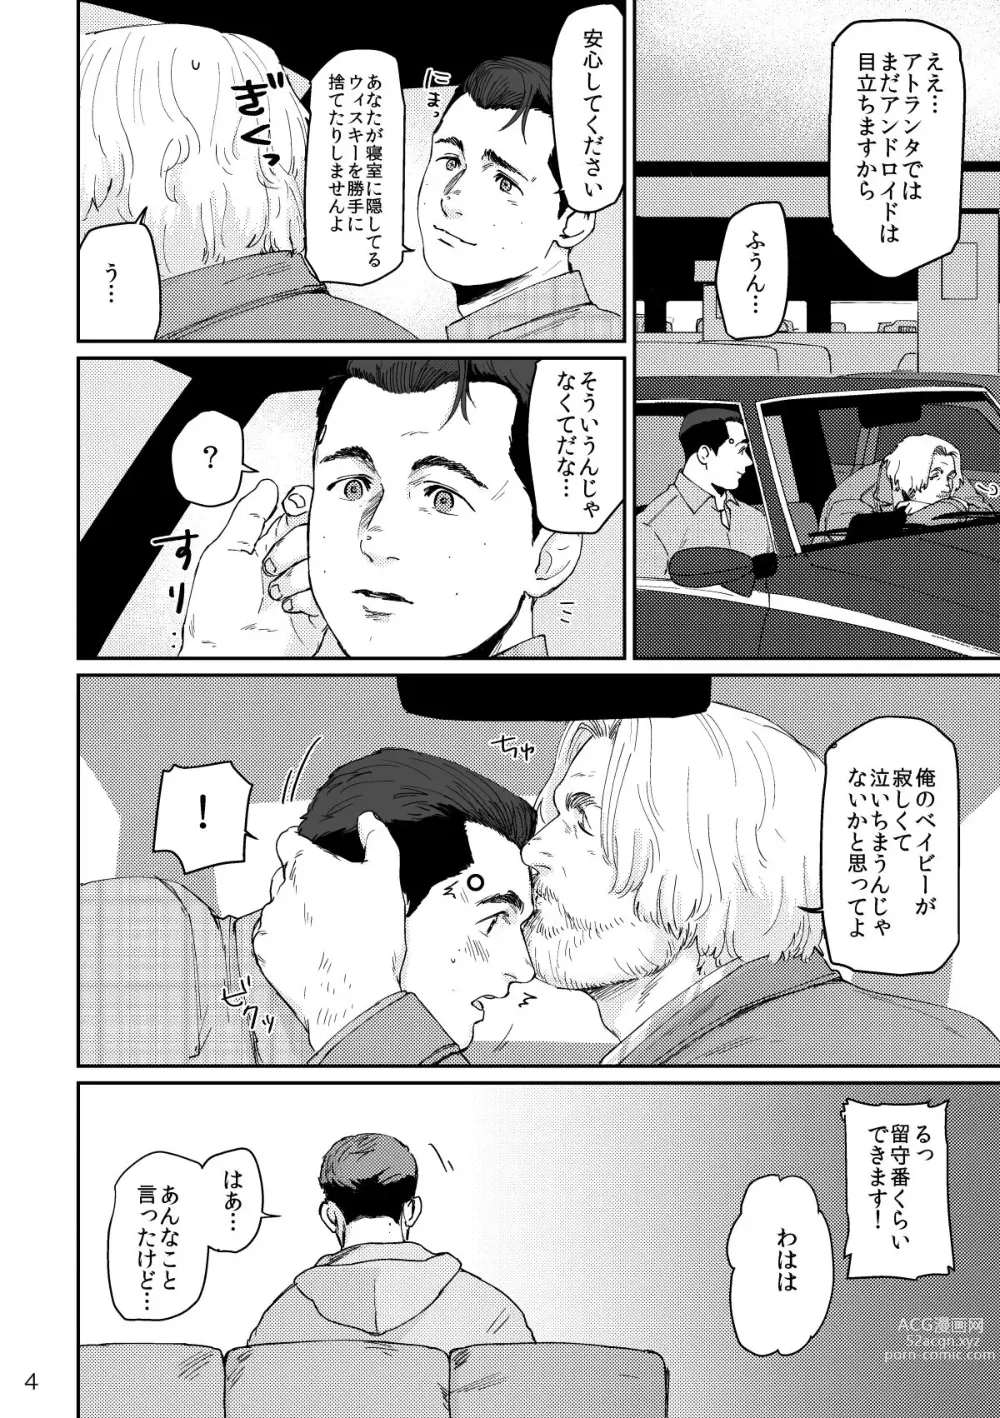 Page 3 of doujinshi RUSH!!